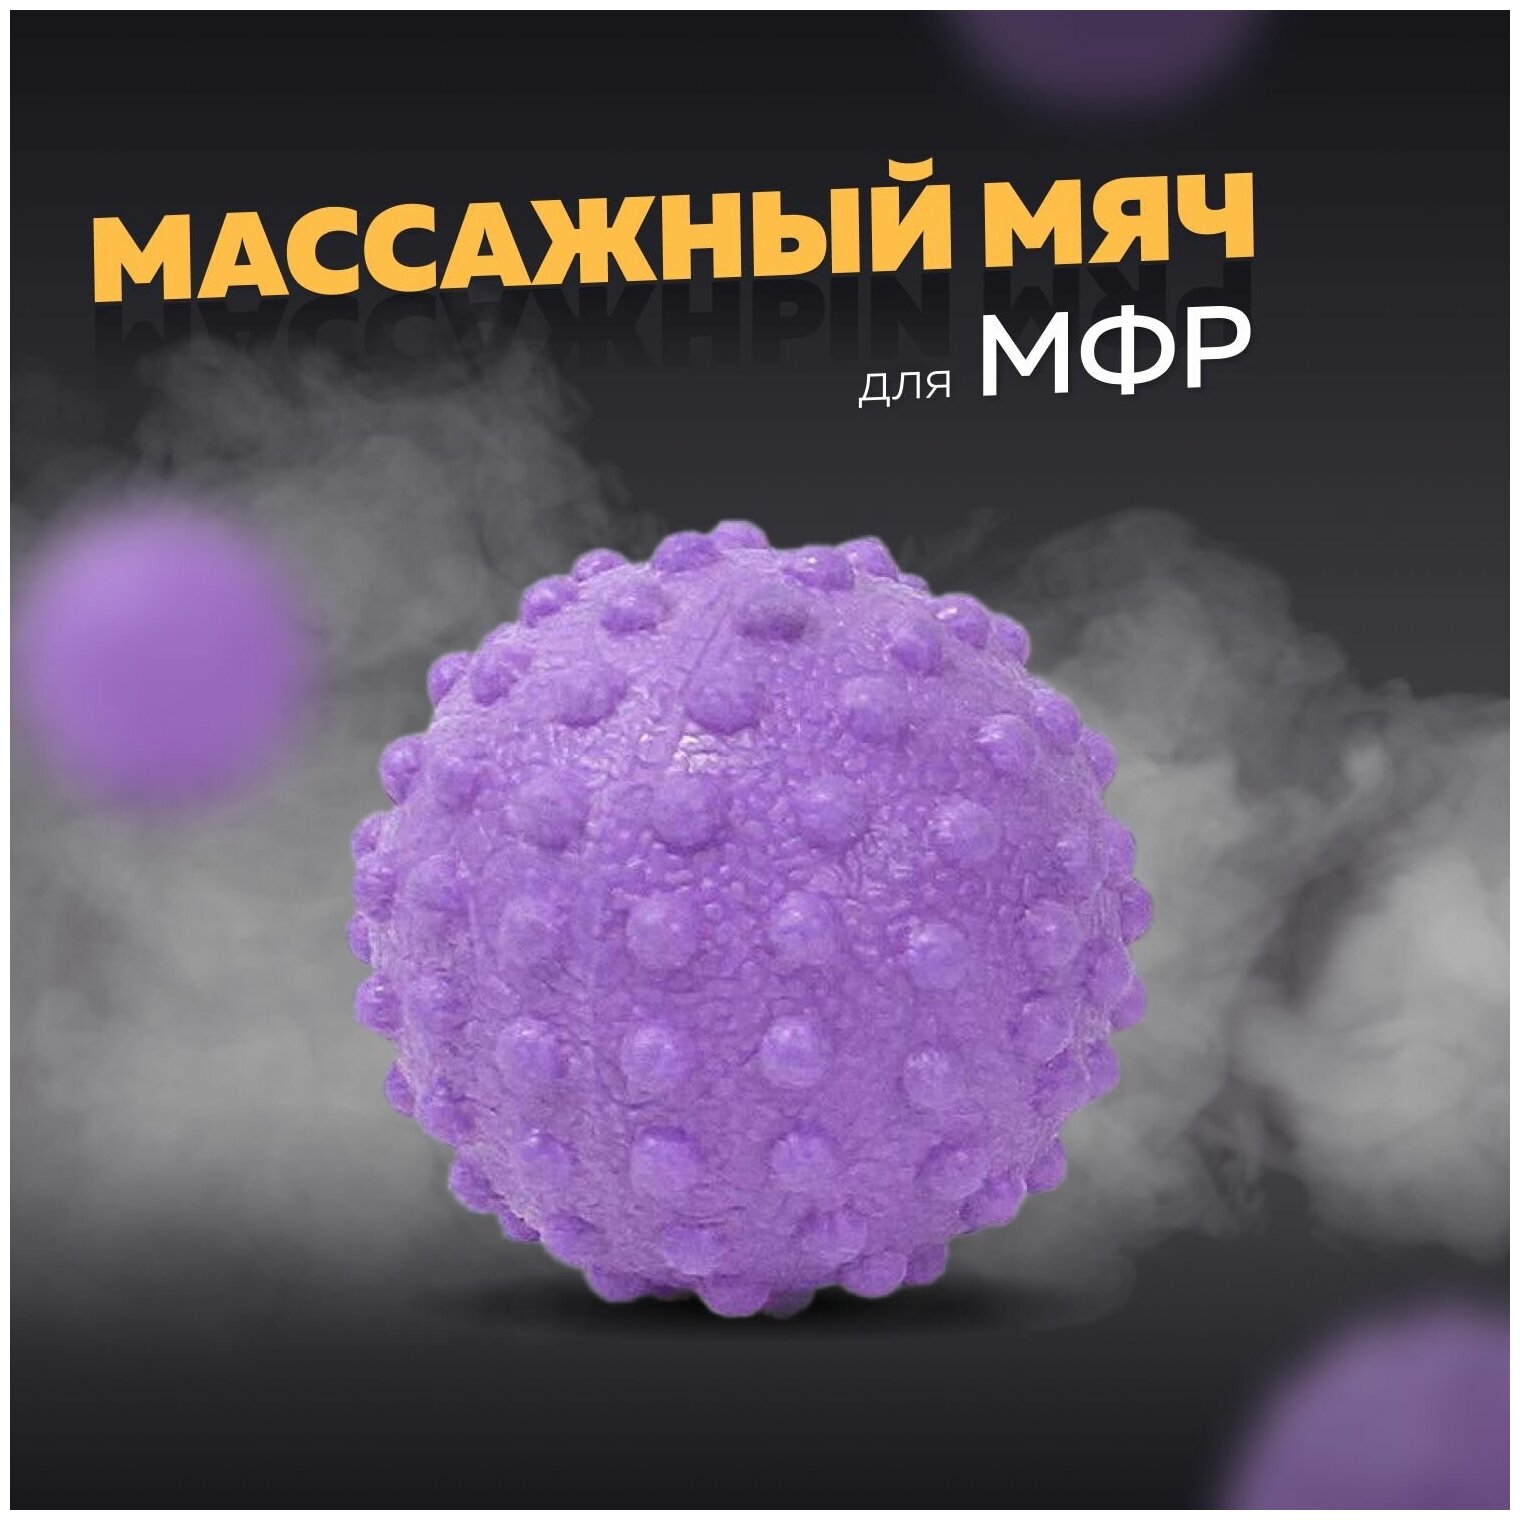 Массажный мяч для МФР, фитнеса и йоги Arushanoff, фиолетовый (M3)